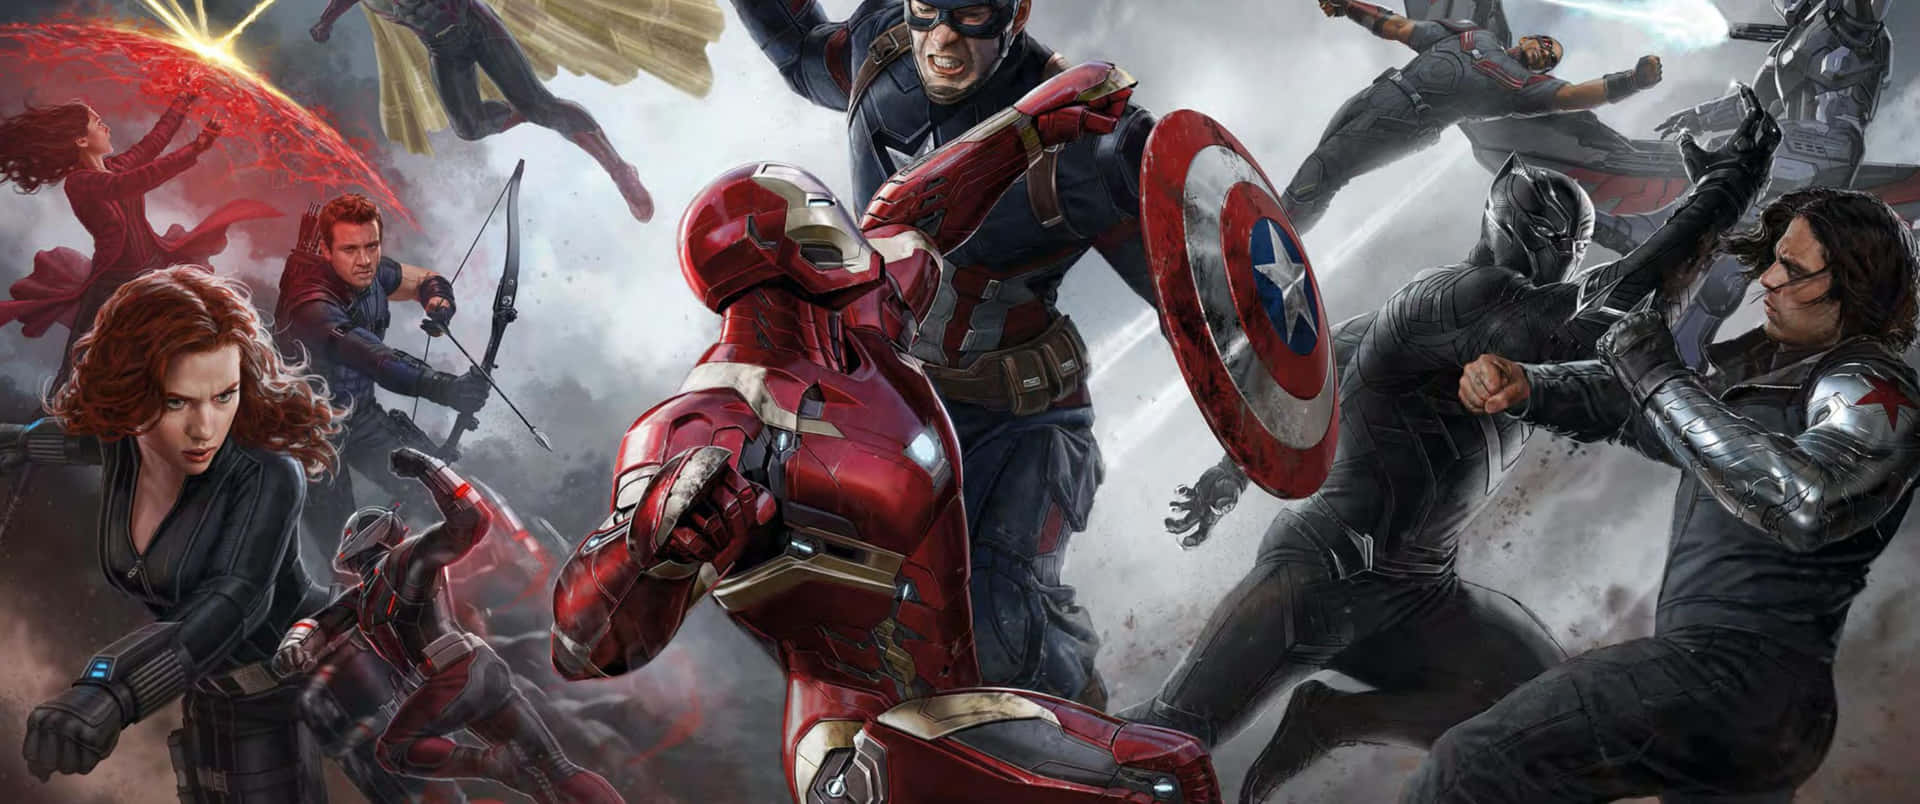 Capitánamérica, Un Superhéroe Para Todos.